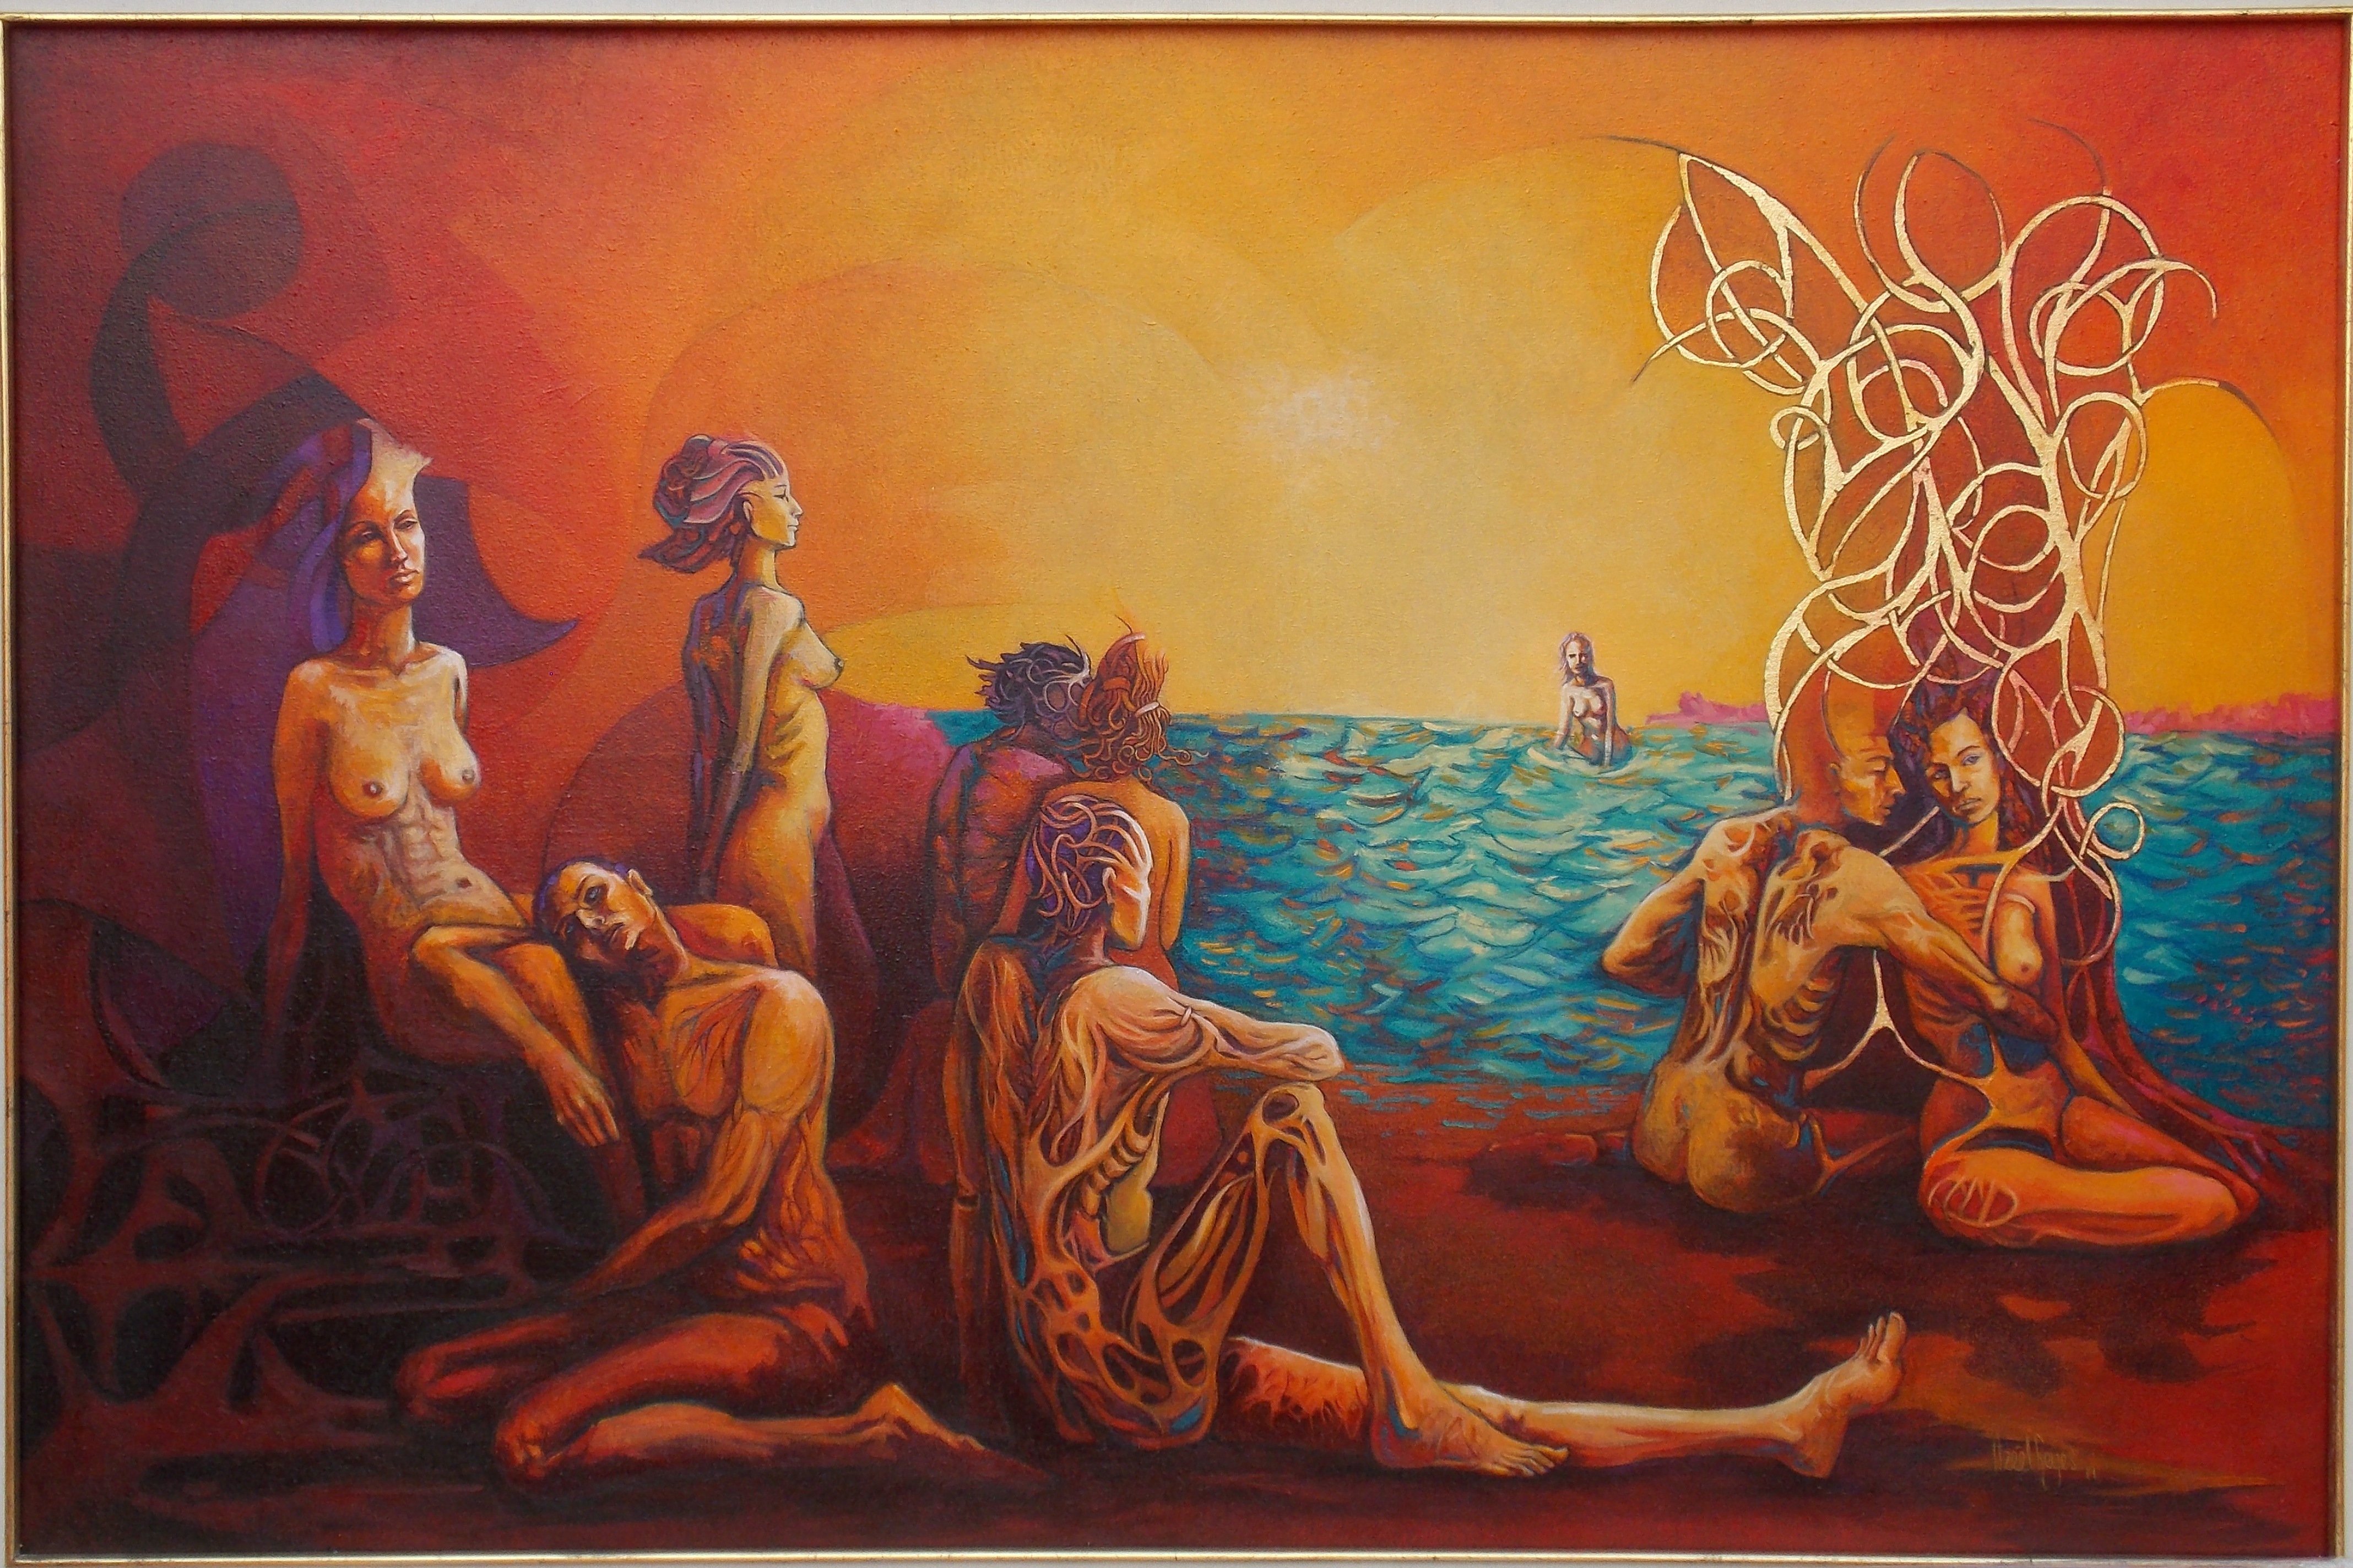 Título: “La playa”
Técnica: óleo sobre tela
Medidas: 80 x 120 cm
Autora: Itzeel Reyes